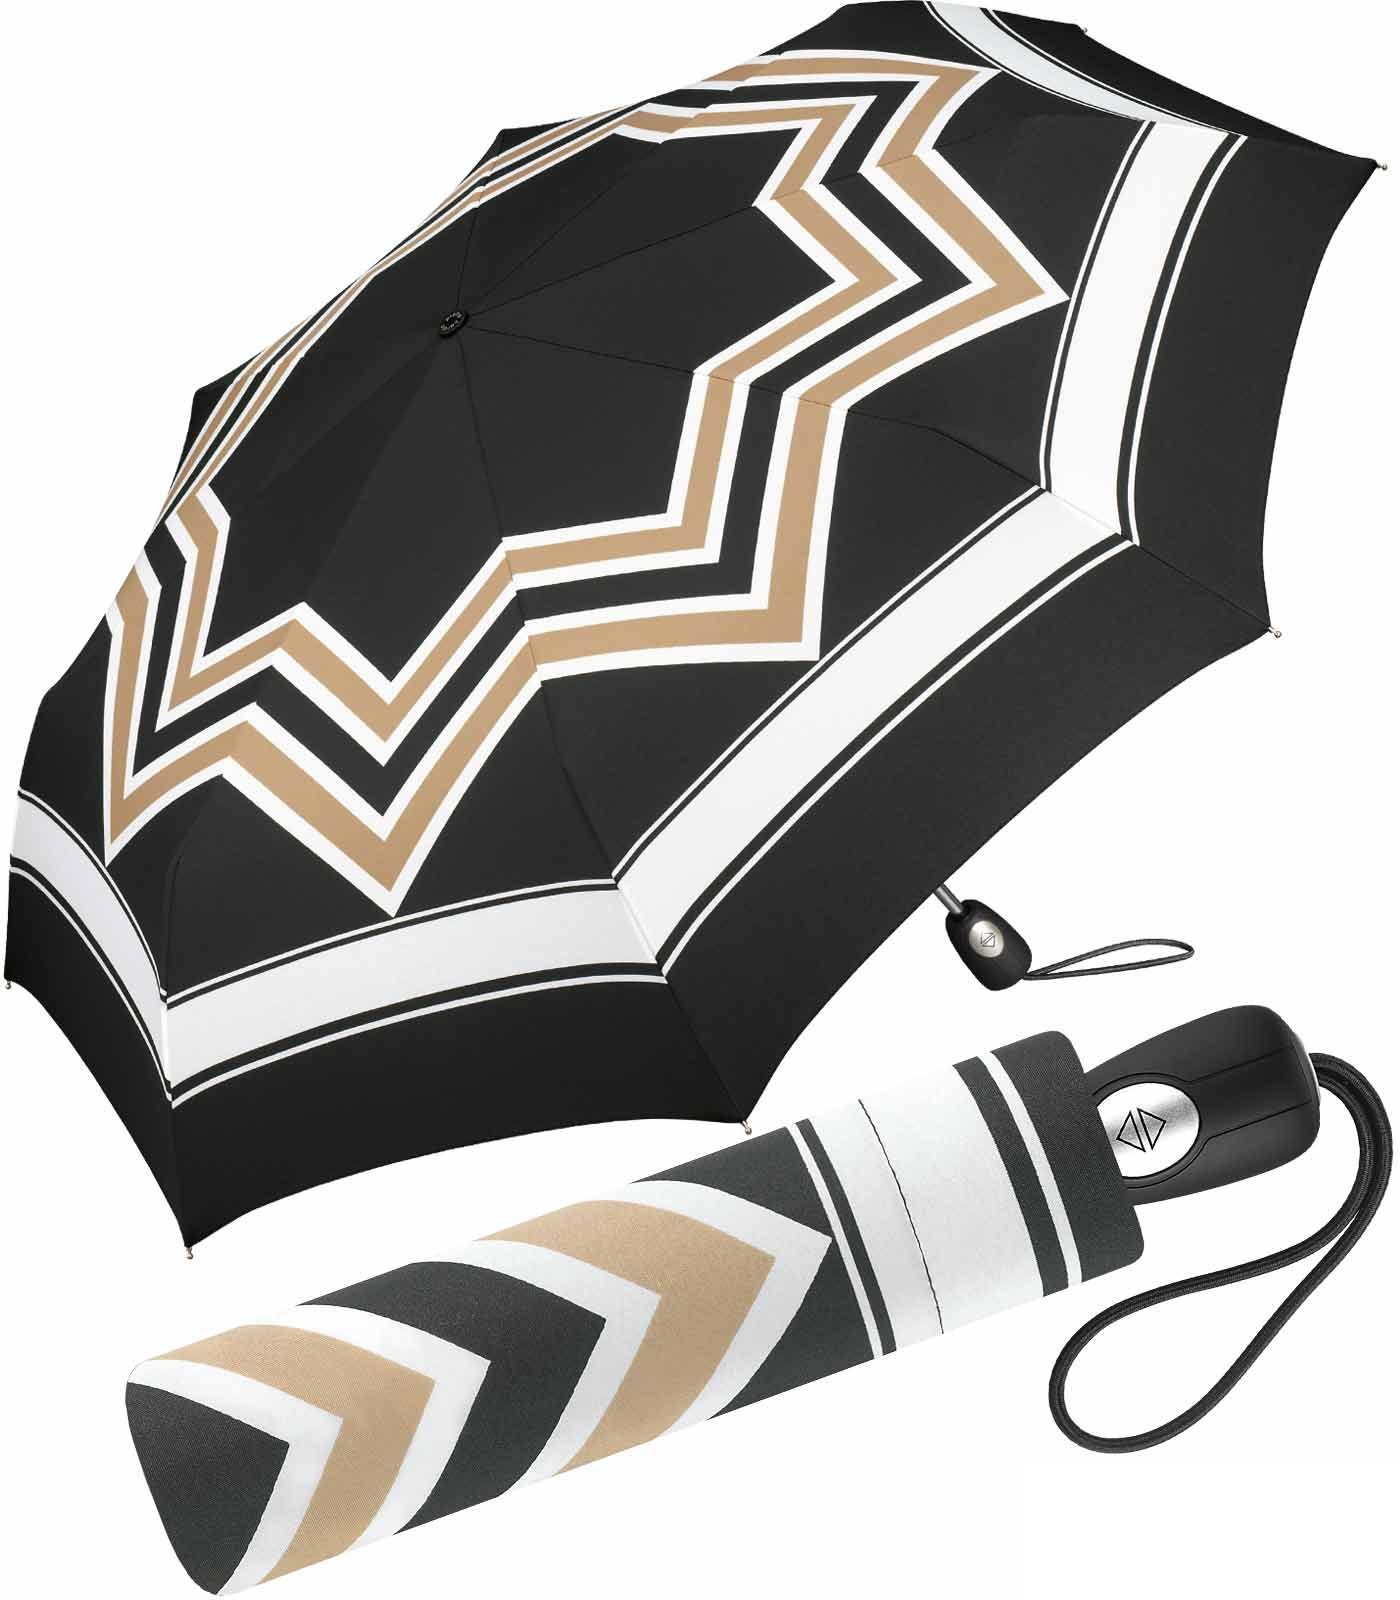 Pierre Cardin Langregenschirm schöner Damen-Regenschirm mit Auf-Zu-Automatik, mit stilvollem, geometrischen Muster